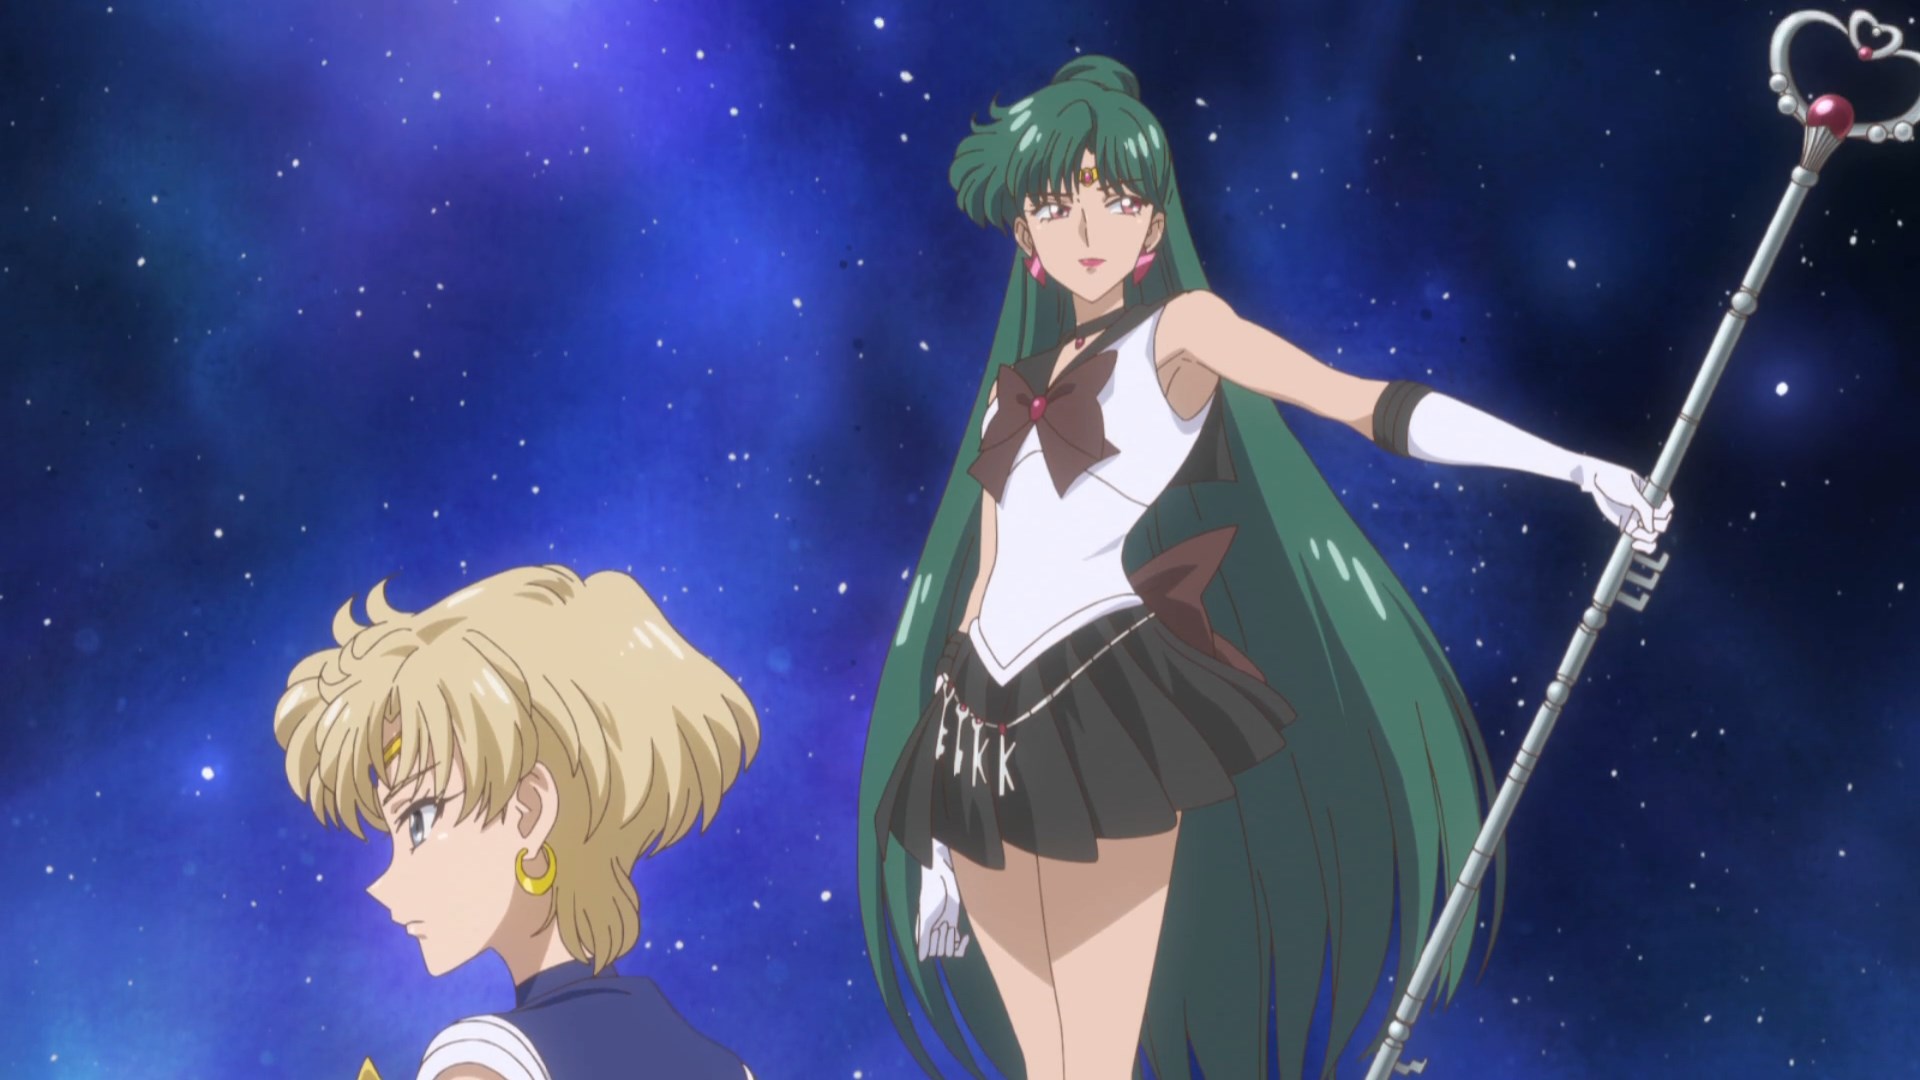 Análise – Sailor Moon Crystal Season III – PróximoNível